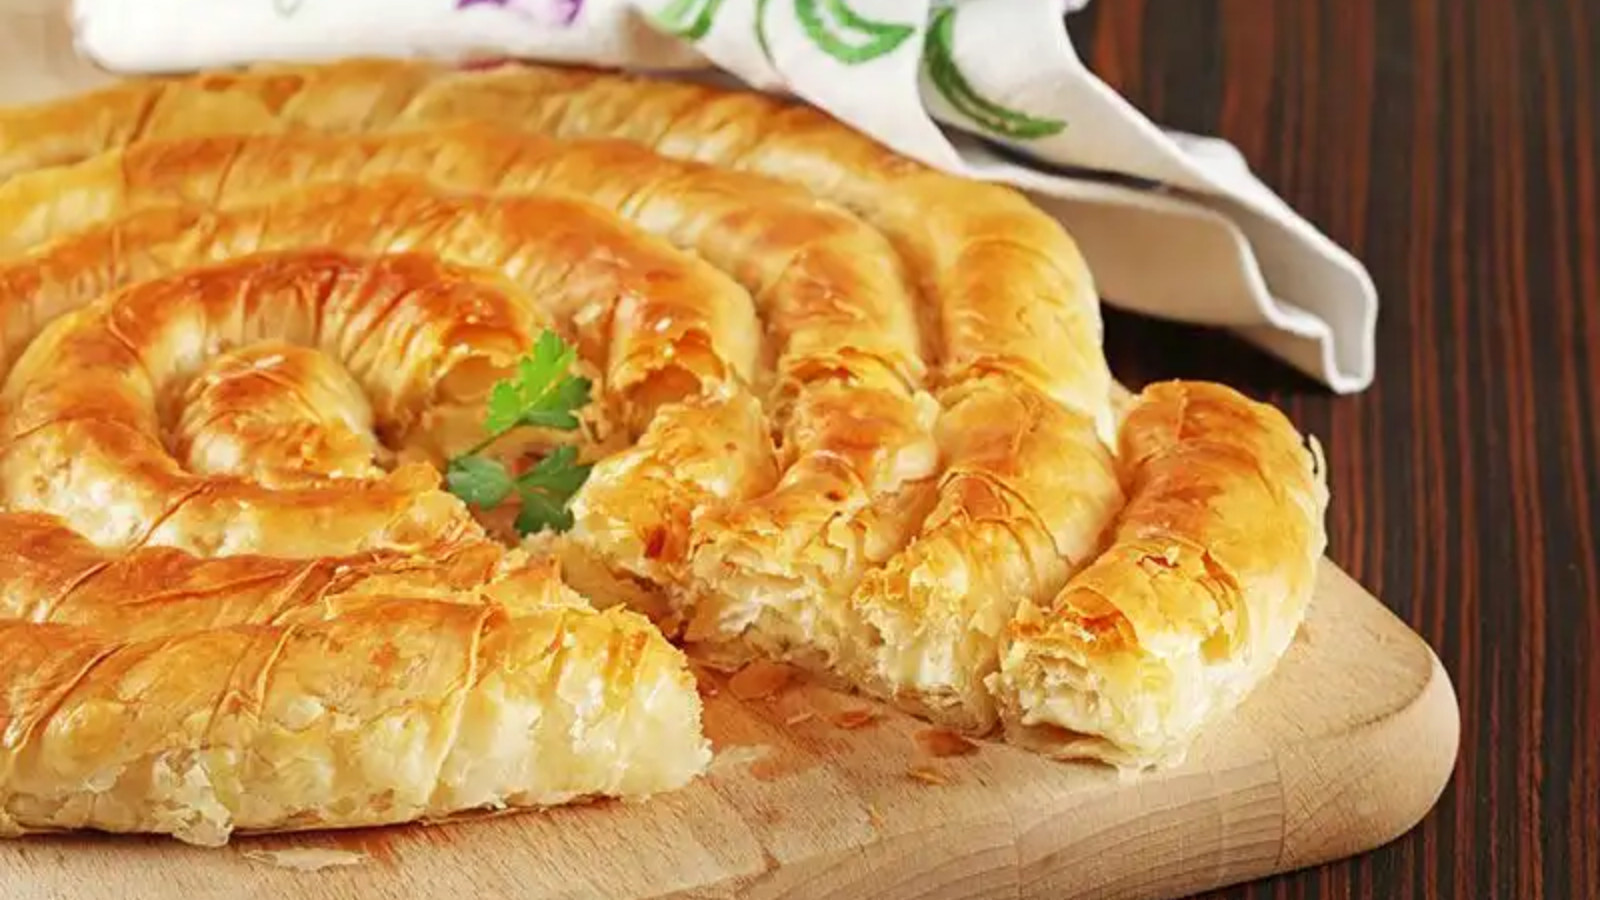 Bayram sabahlarına tat katacak enfes bir lezzet: Çarşaf böreği tarifi nasıl yapılır?